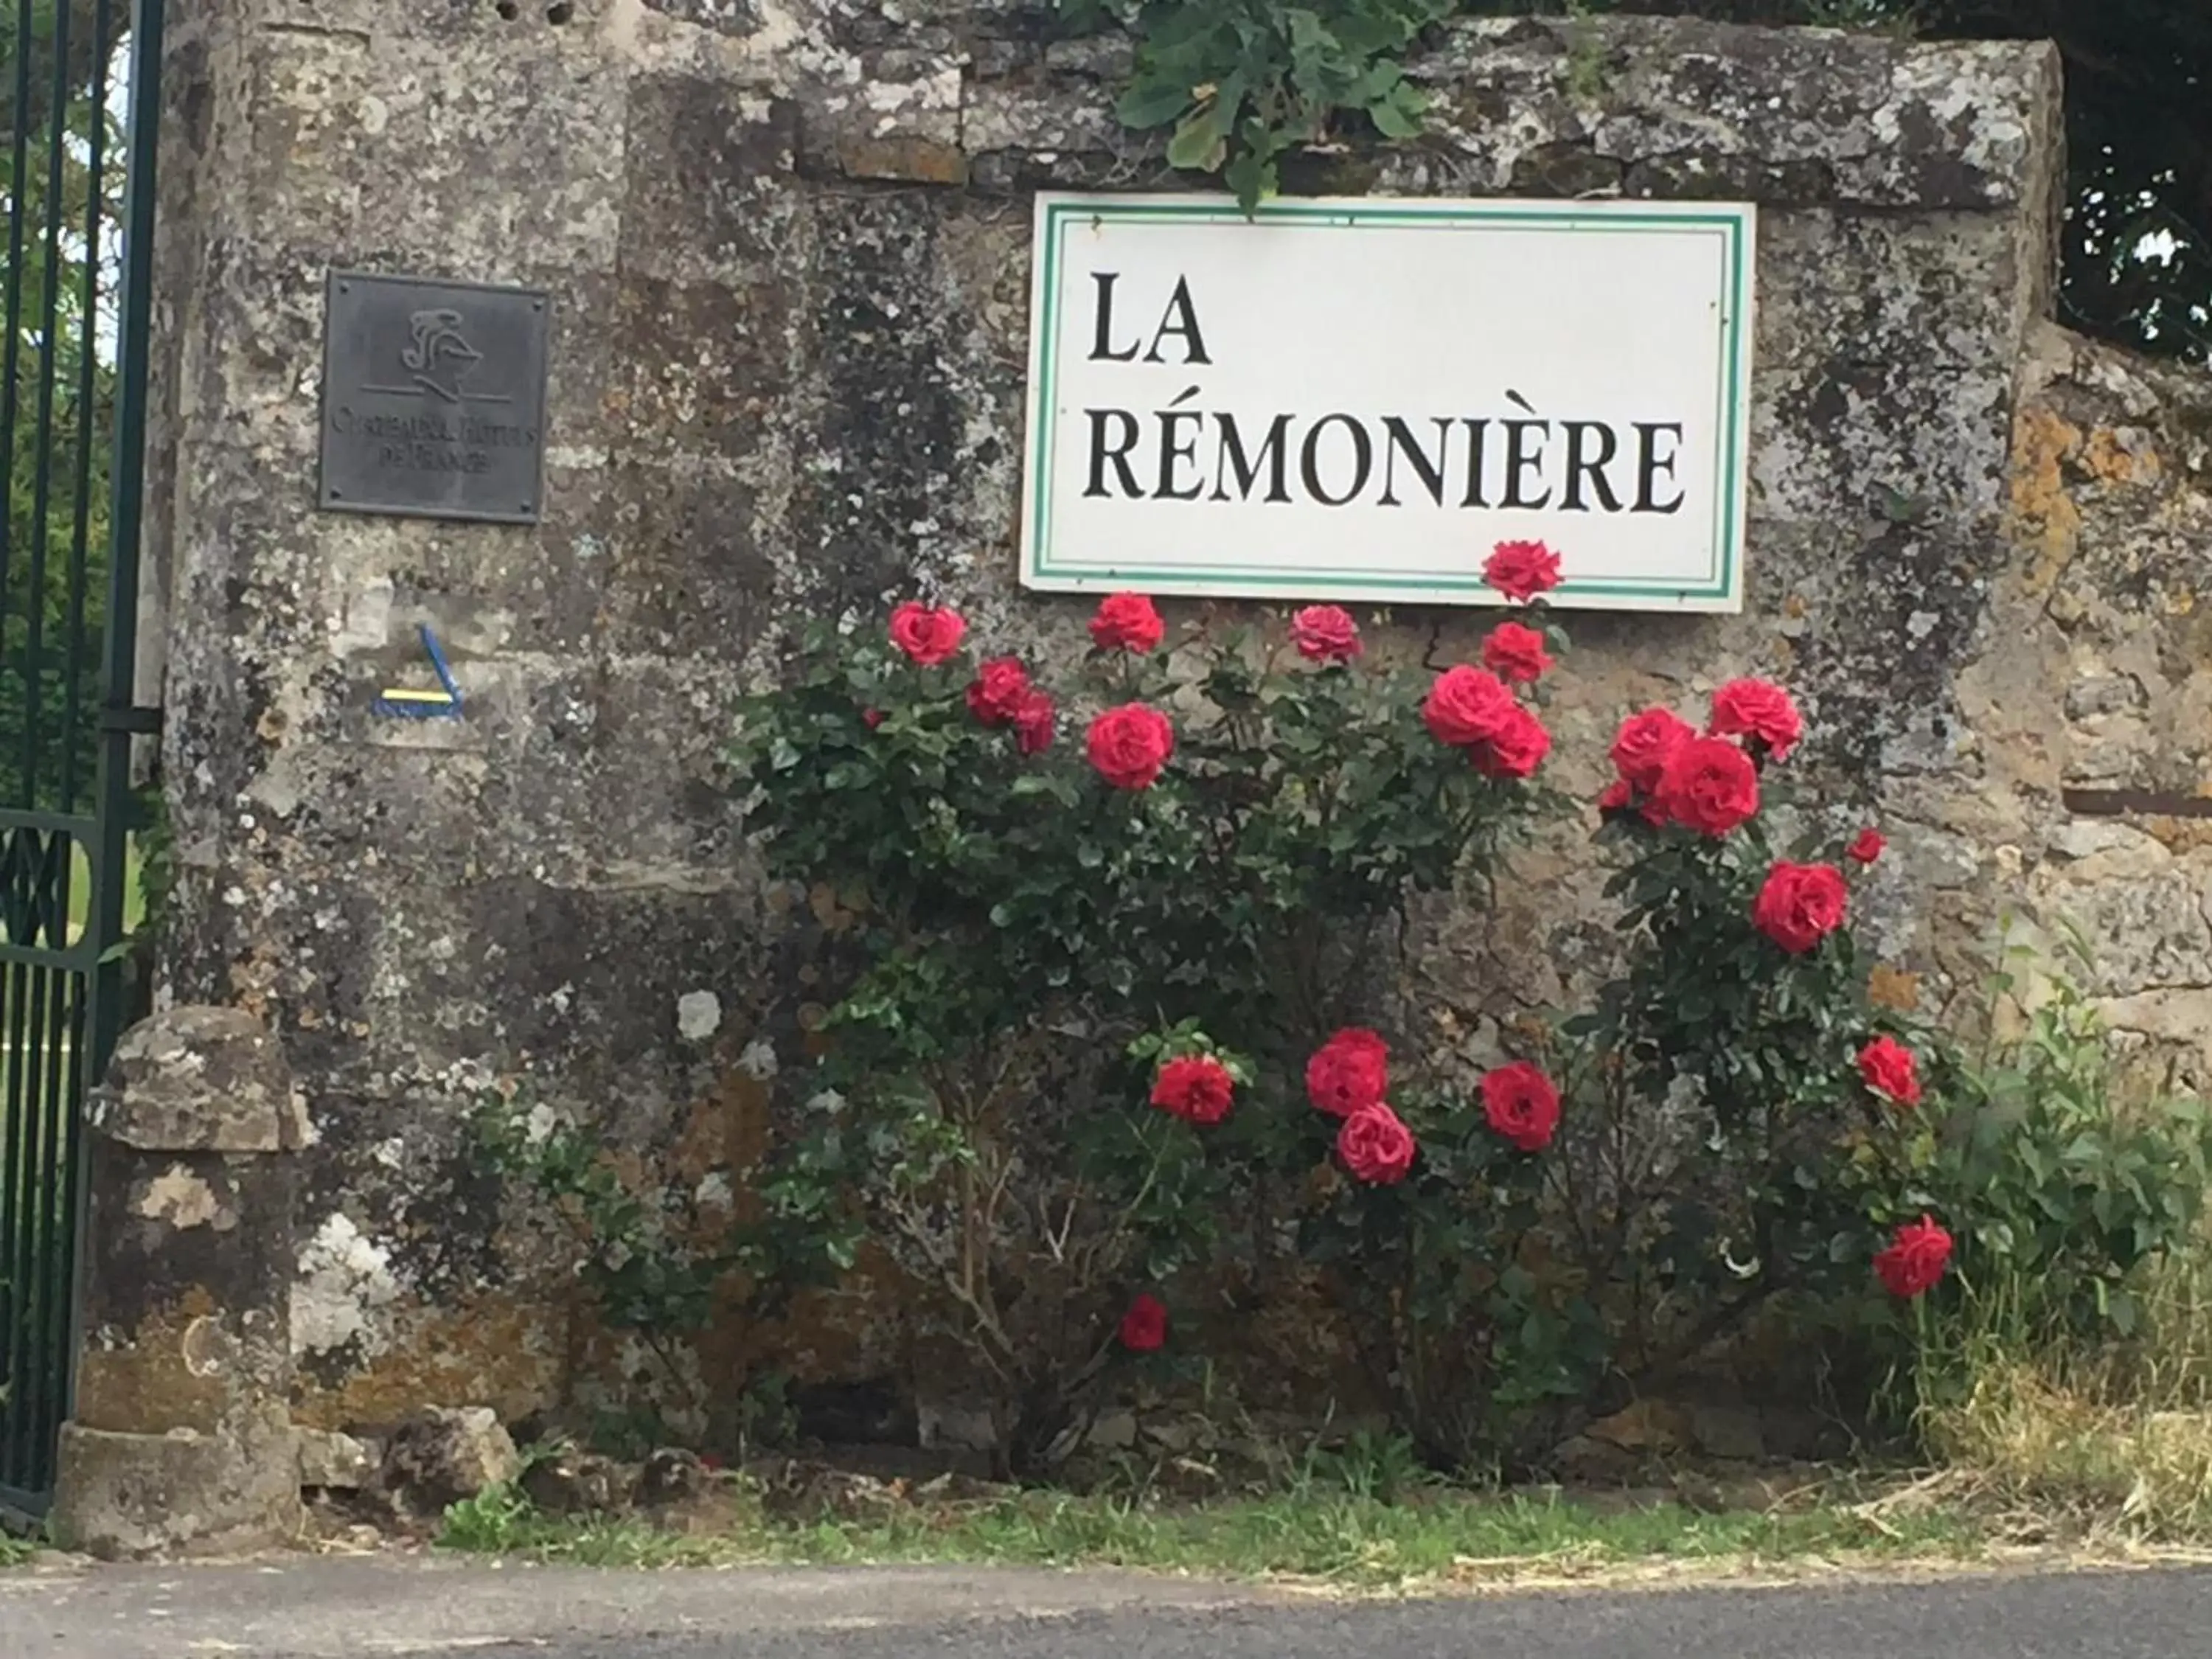 Property logo or sign in Manoir de la Rémonière